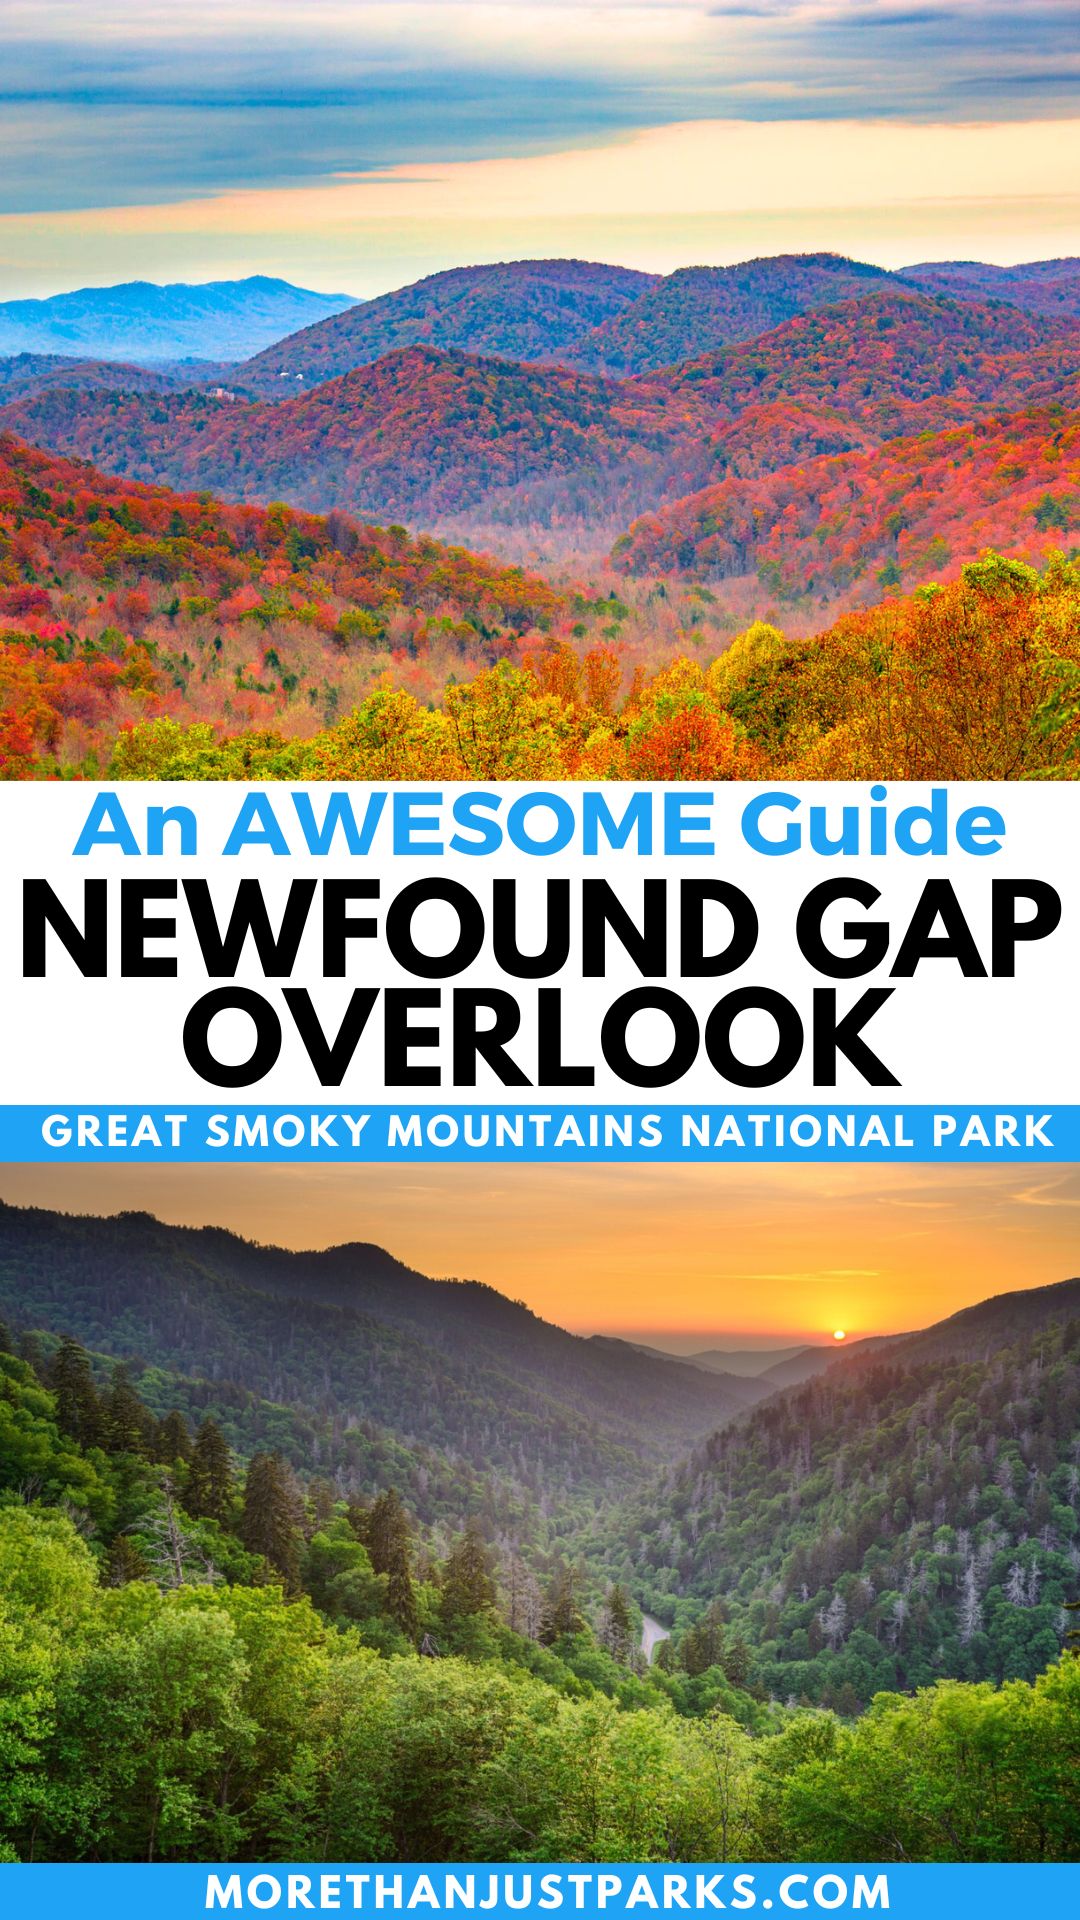 Newfound Gap Overlook Graphic